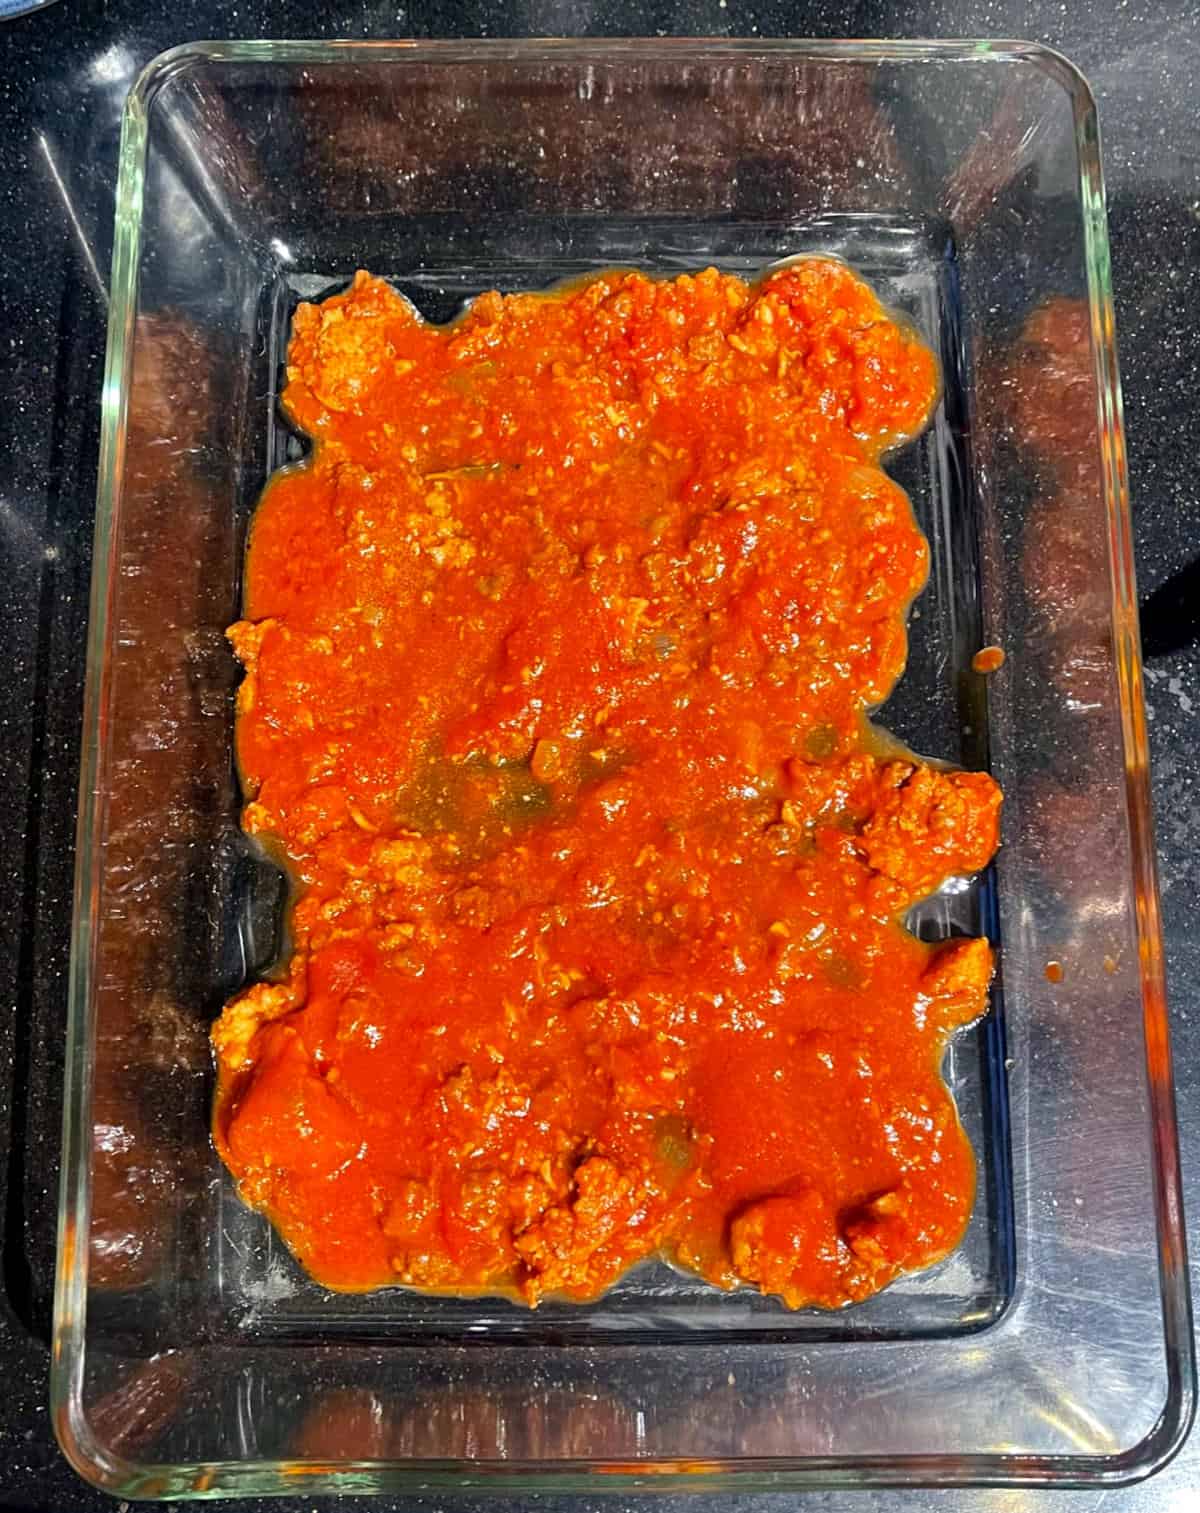 Tomato marinara layered in lasagna baking pan.